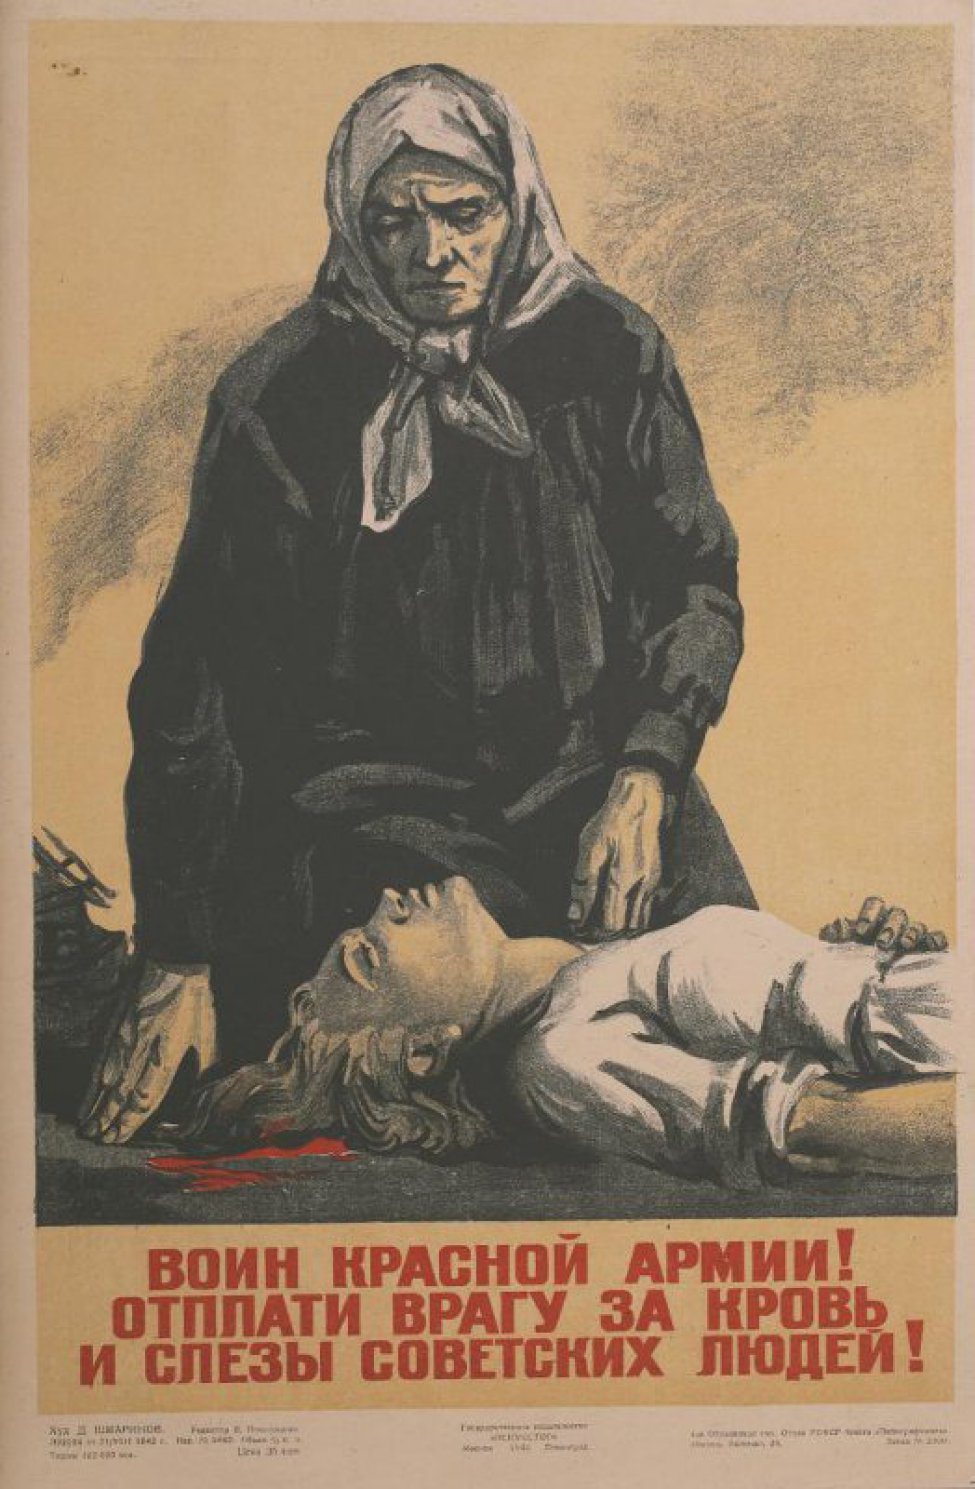 Изображена пожилая женщина в платочке, стоящая на коленях перед убитой девушкой, лежащей на земле, под головой лужа крови. Под изображением призыв.